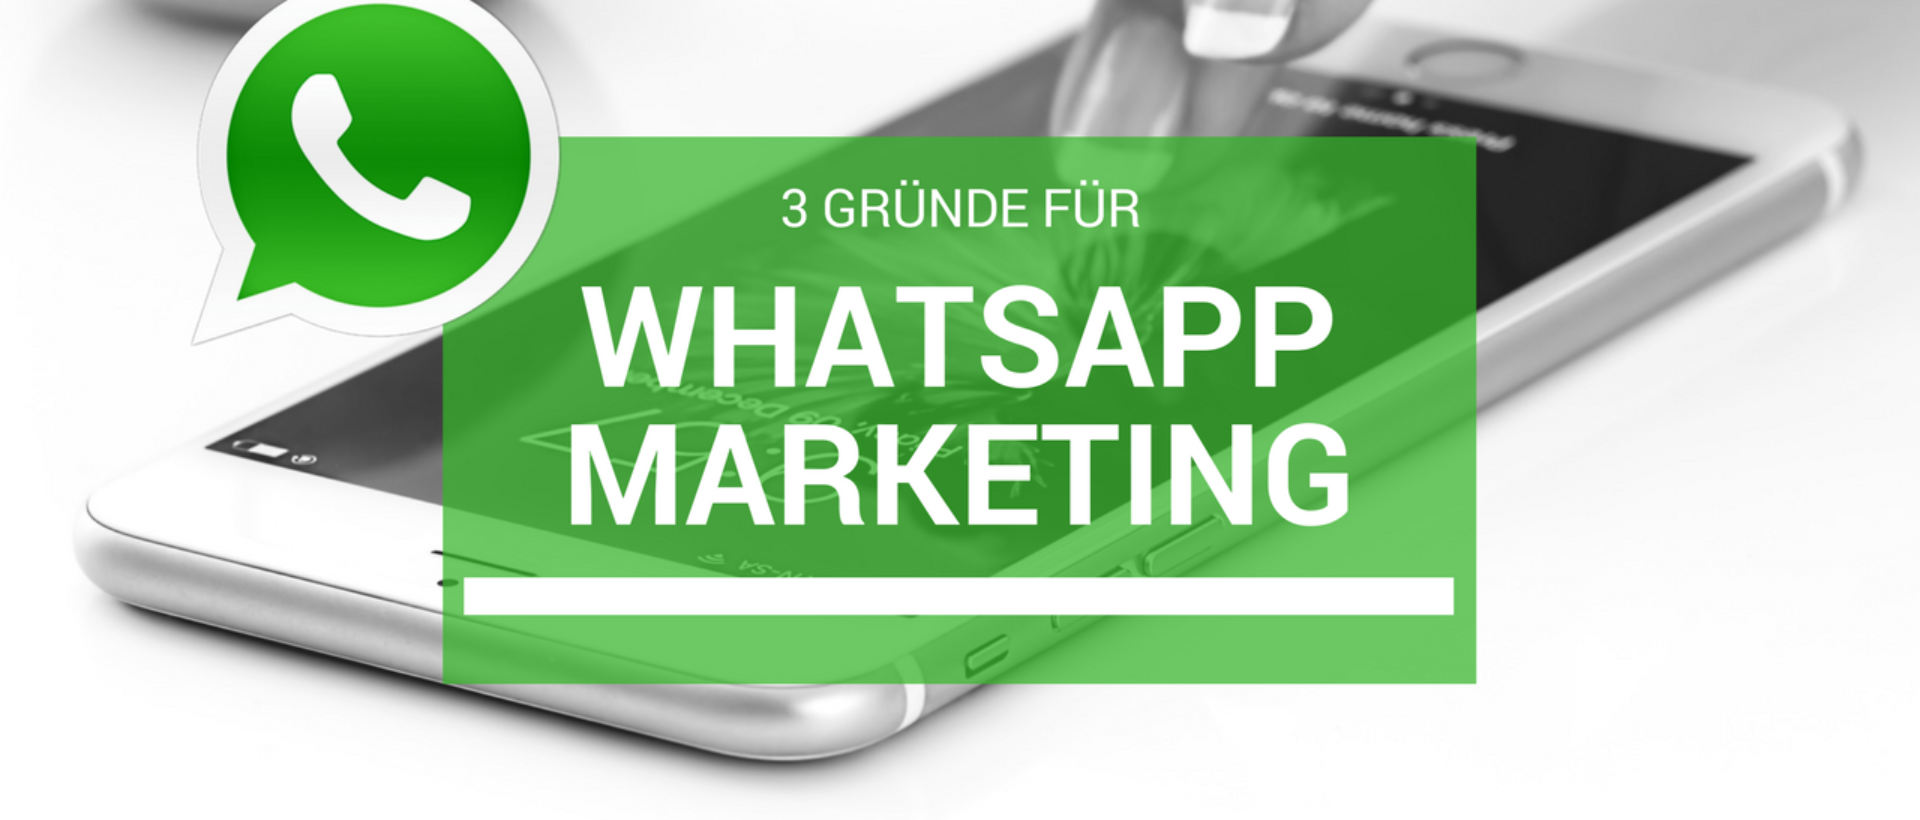 3 Gründe für WhatsApp Marketing